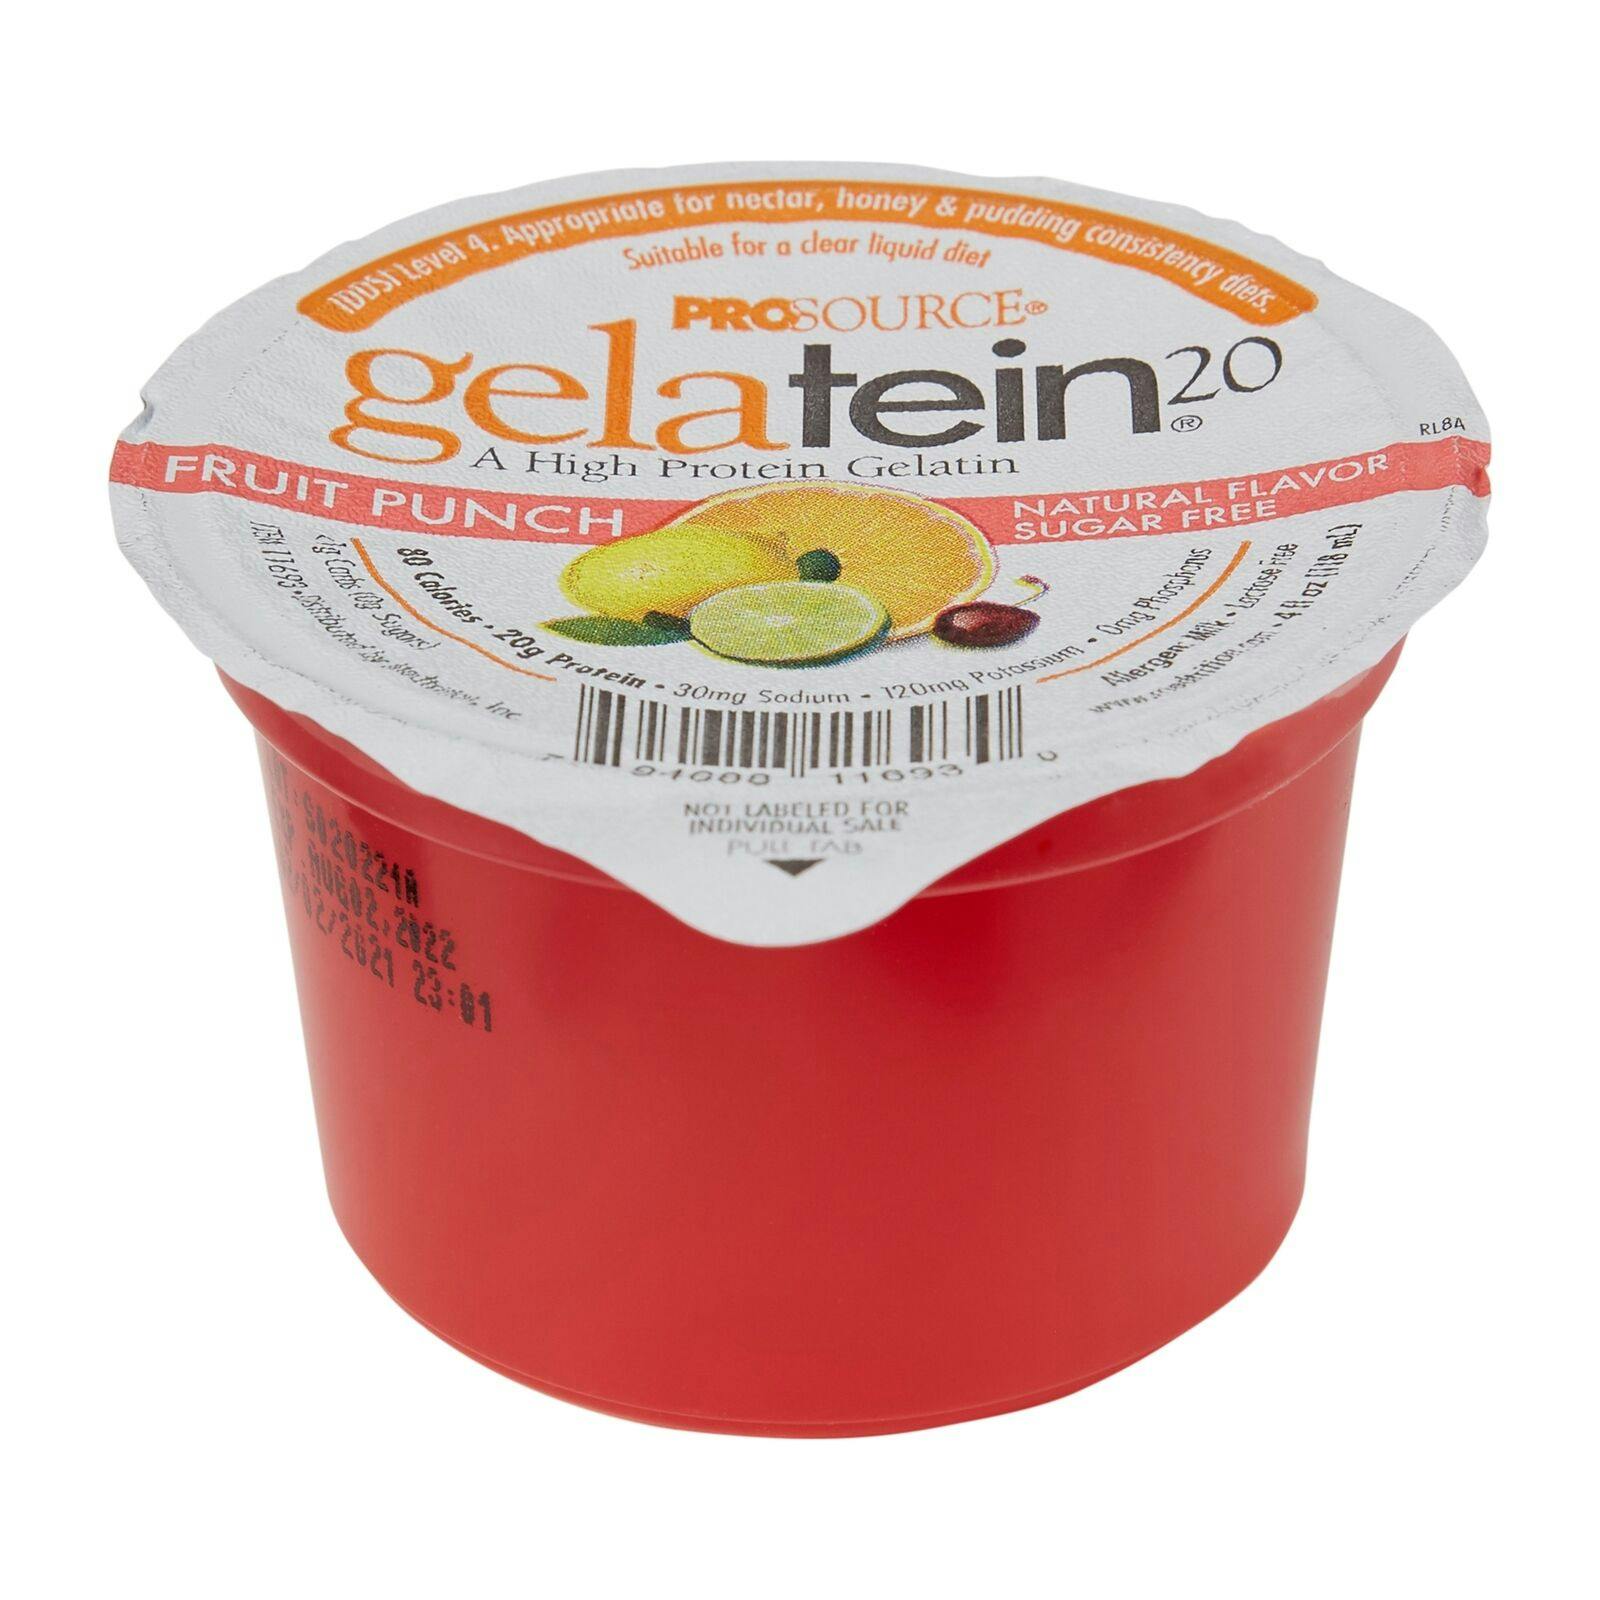 Prosource Gelatein 20 Sugar Free Protein Cup, Fruit Punch, 4 oz., 11693, Case of 36